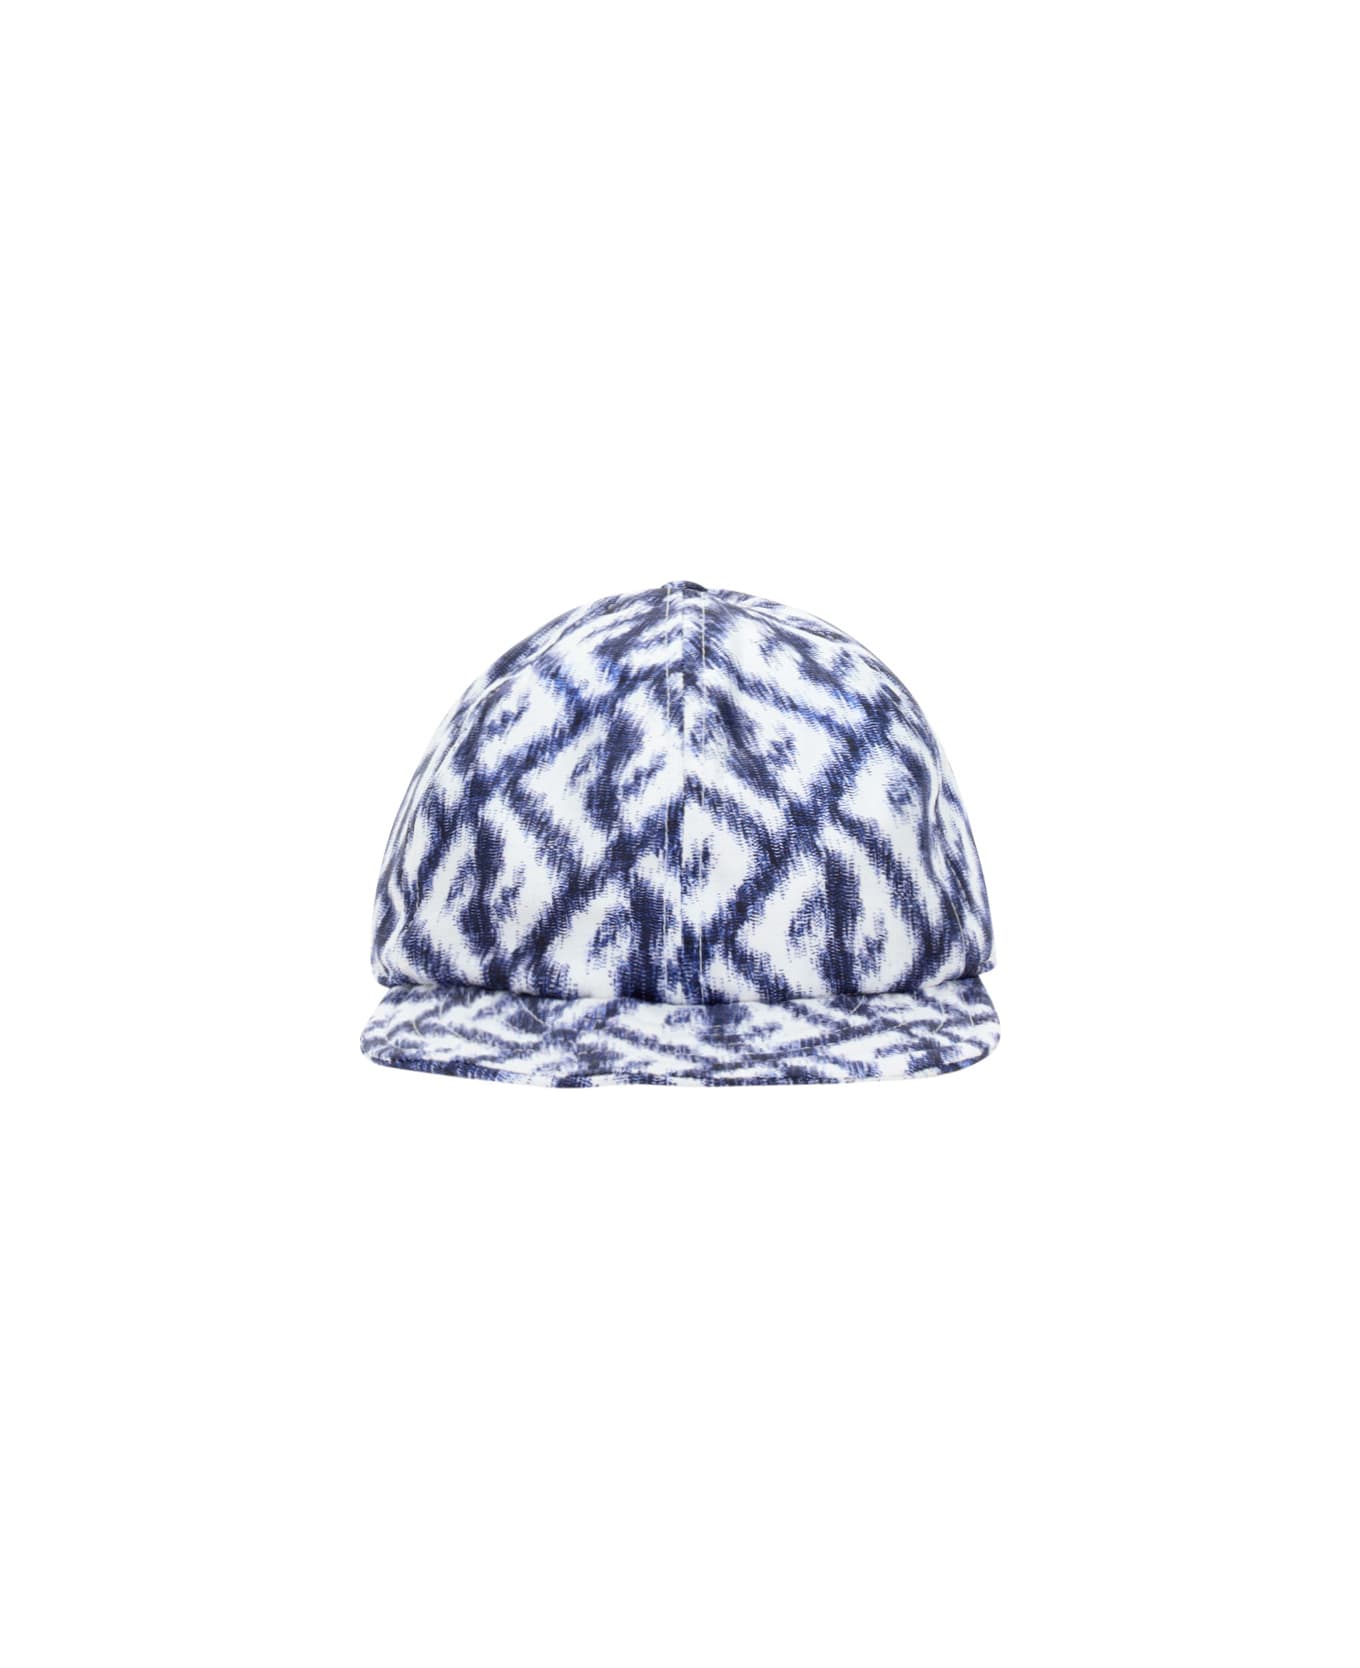 Fendi Baseball Cap - Blu/bianco 帽子